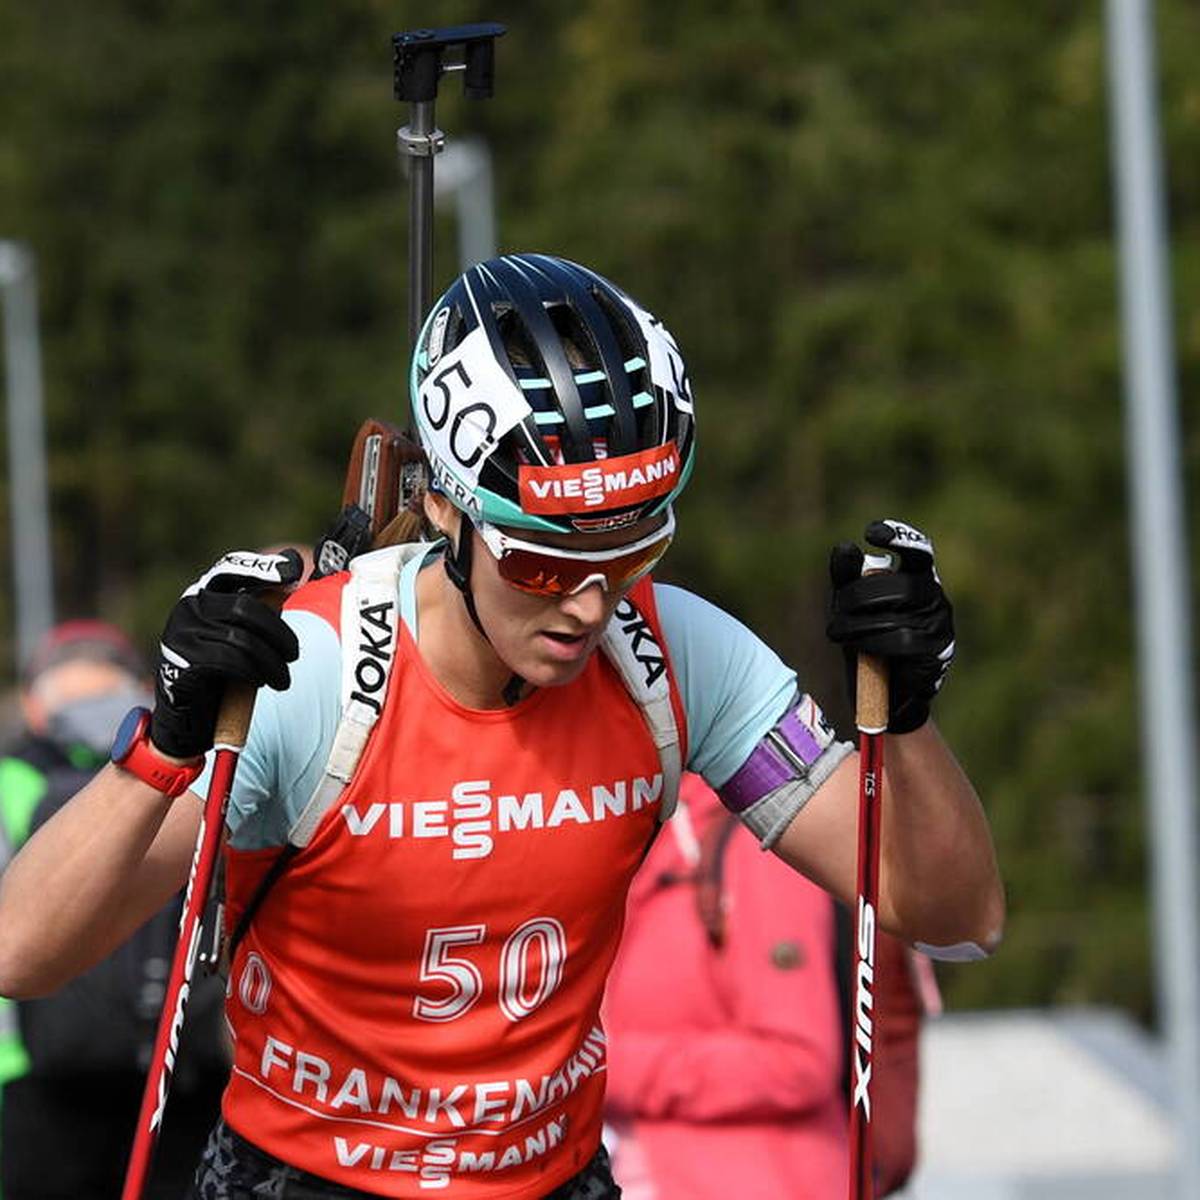 Ende November startet die neue Biathlon-Saison. Dabei werden gleich zwei deutsche Athletinnen nun mit einem Doppelnamen an den Start gehen.